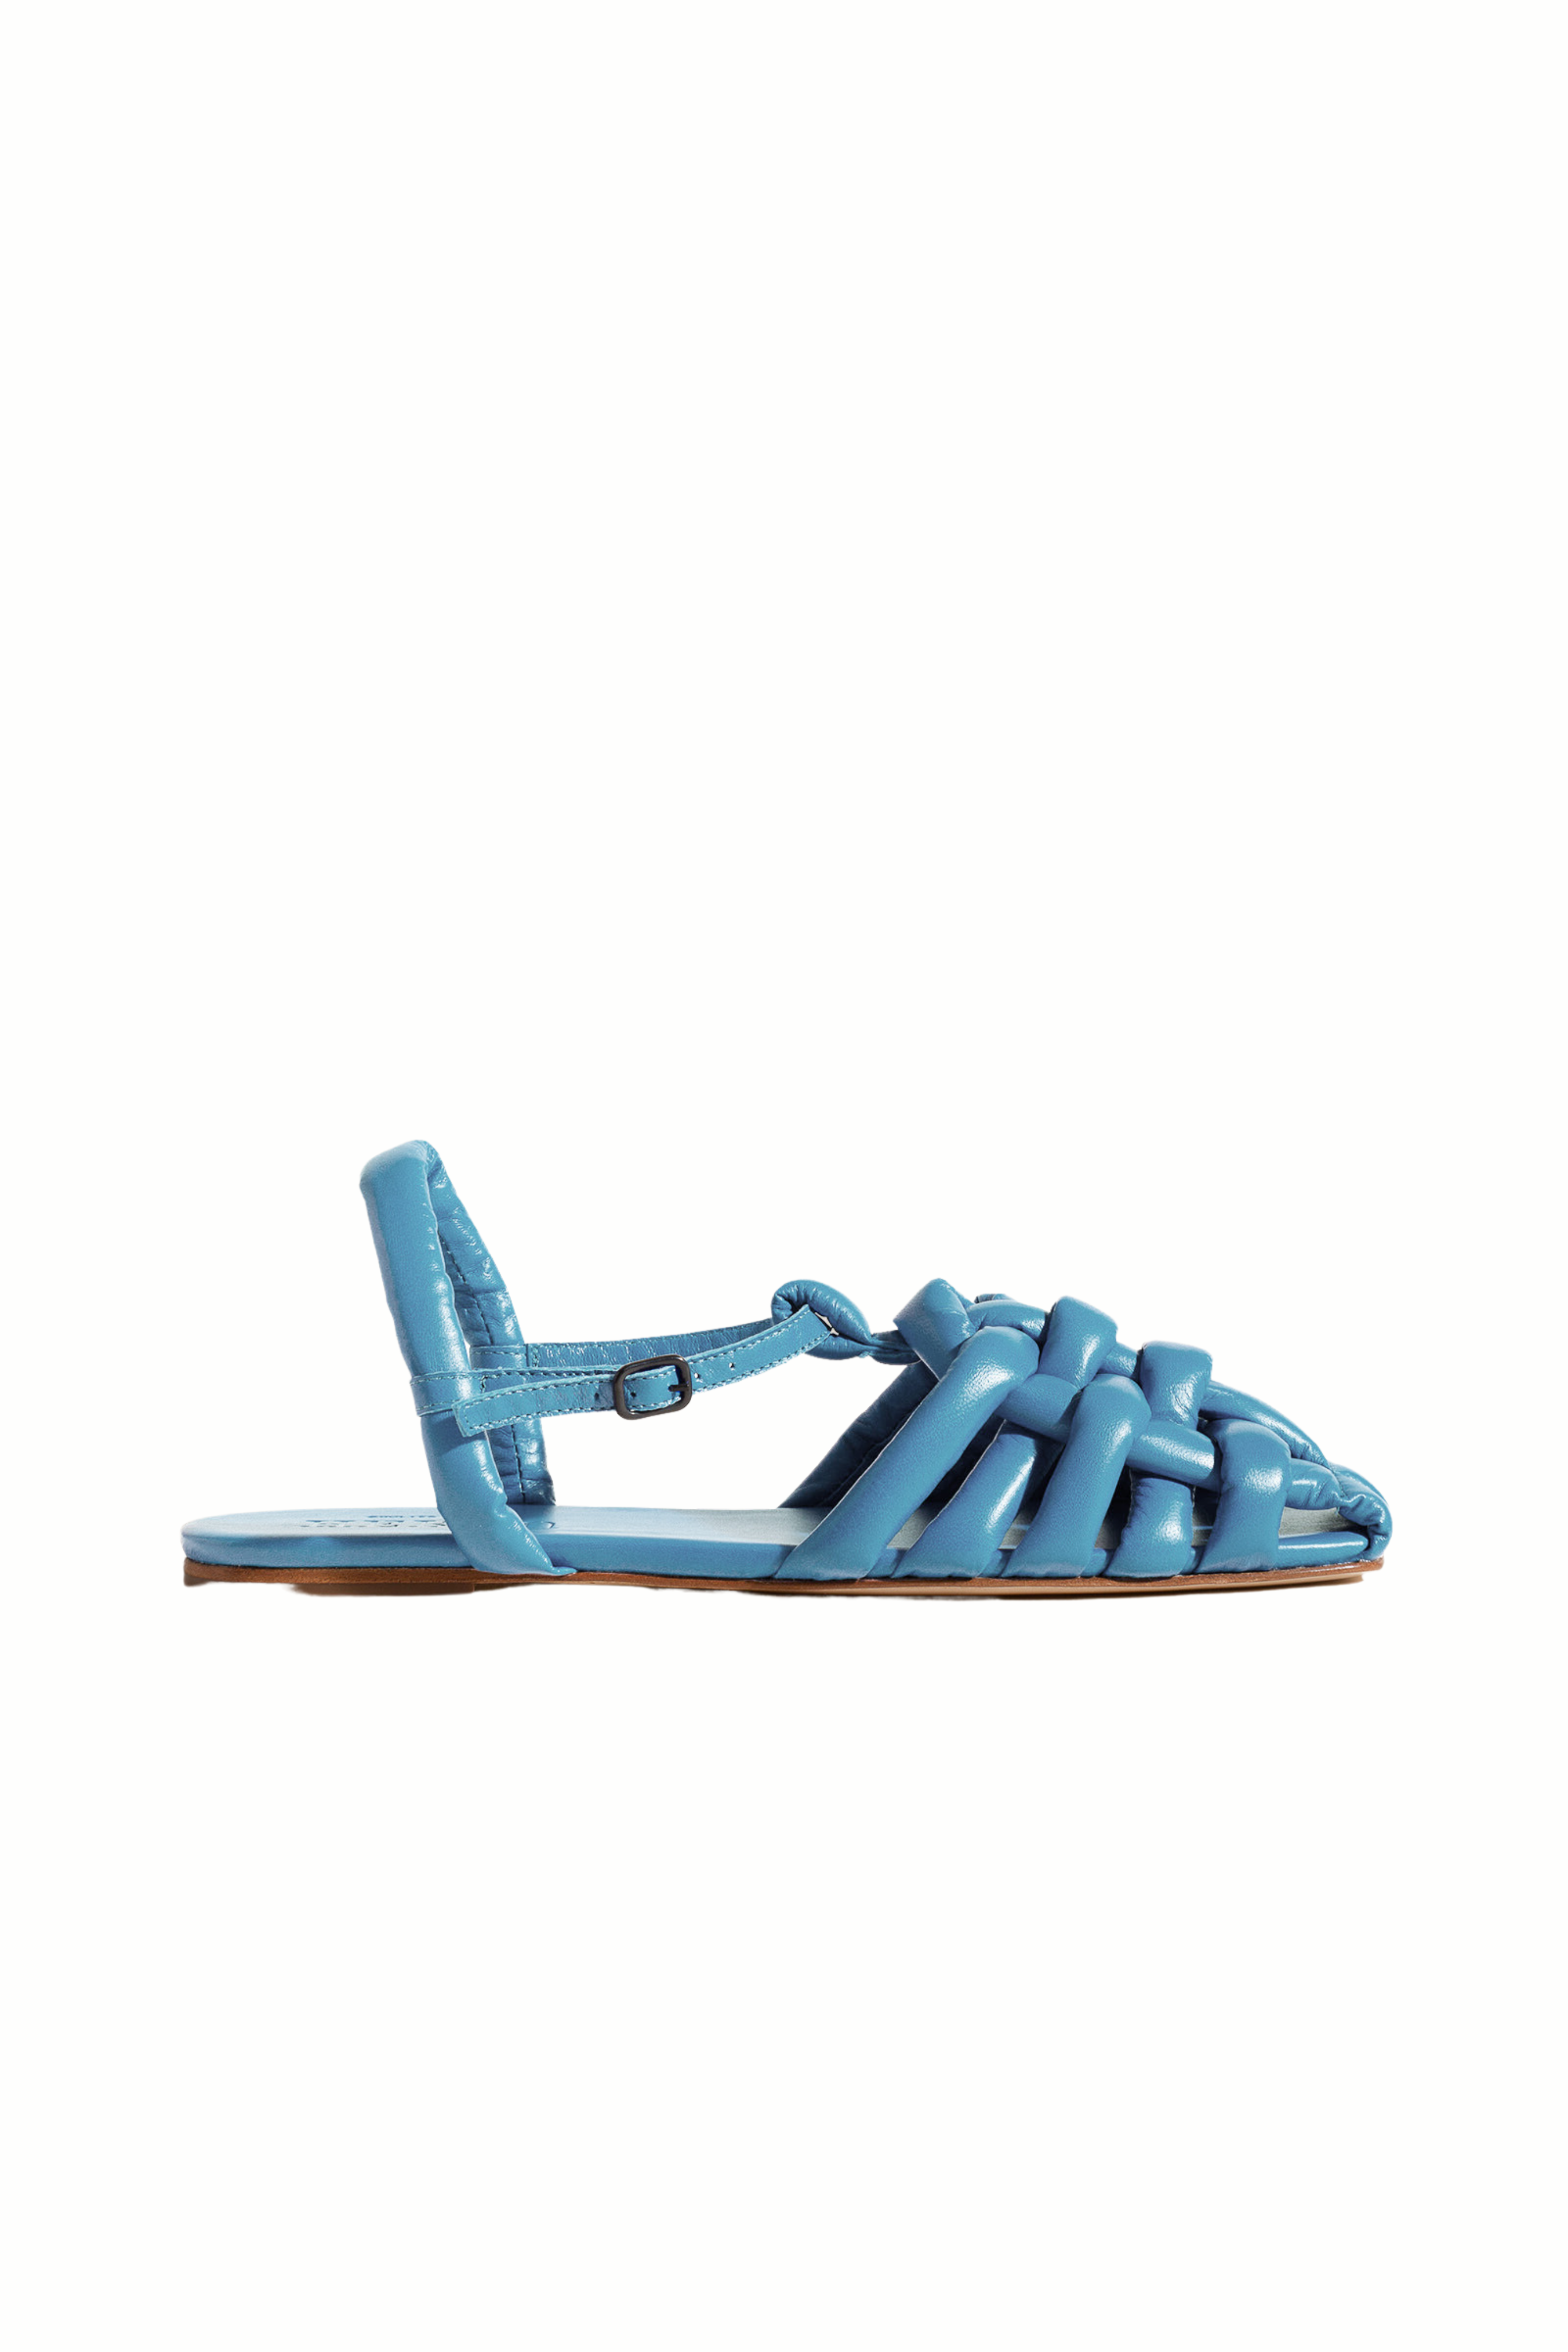 Cabersa Sandal in Blue